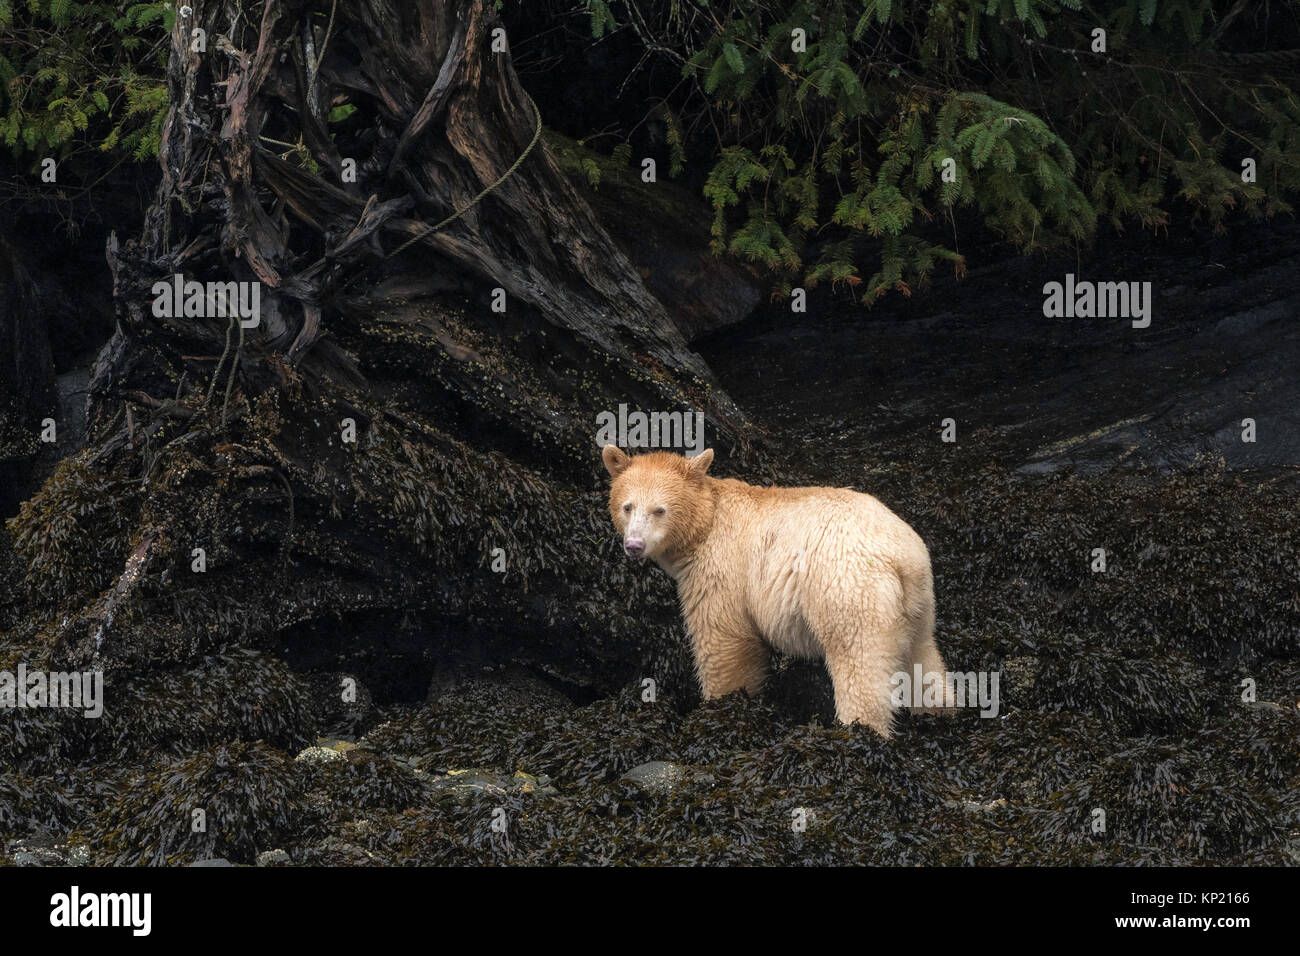 Uno spirito Kermode Bear nella grande orso foresta pluviale in British Columbia, Canada Foto Stock